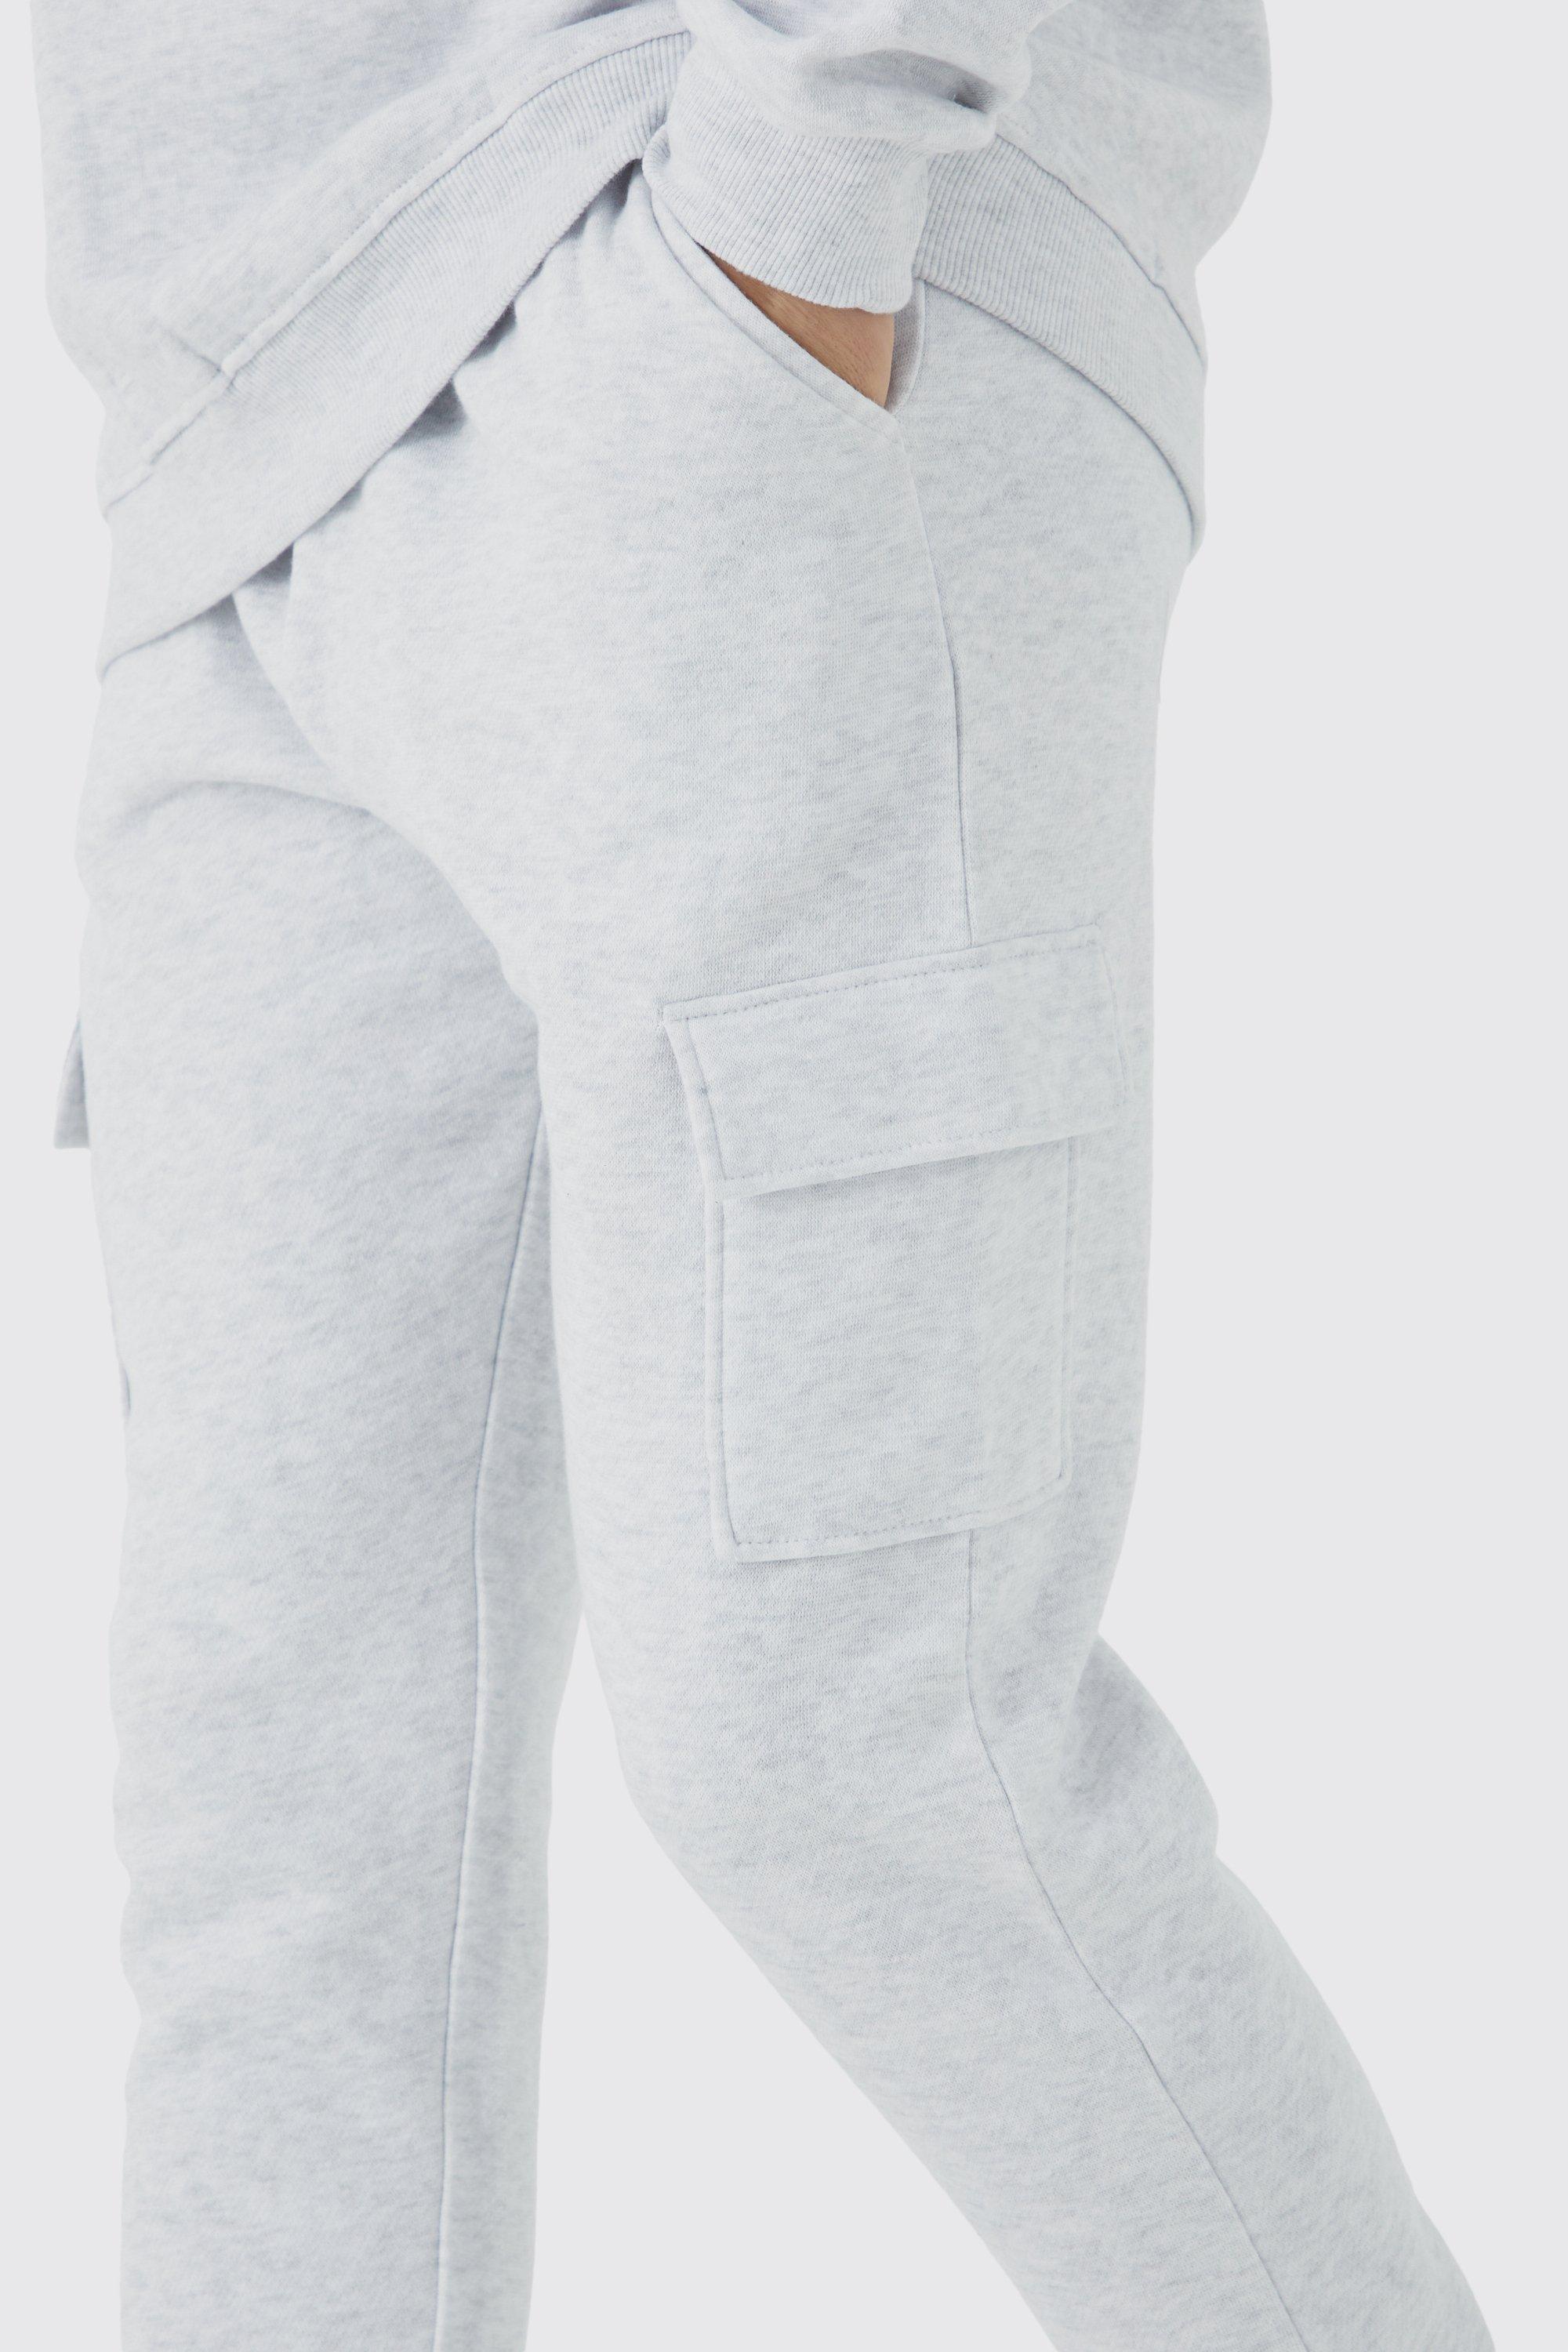 Nike Club Fleece cuffed cargo sweatpants in gray heather - Lgray